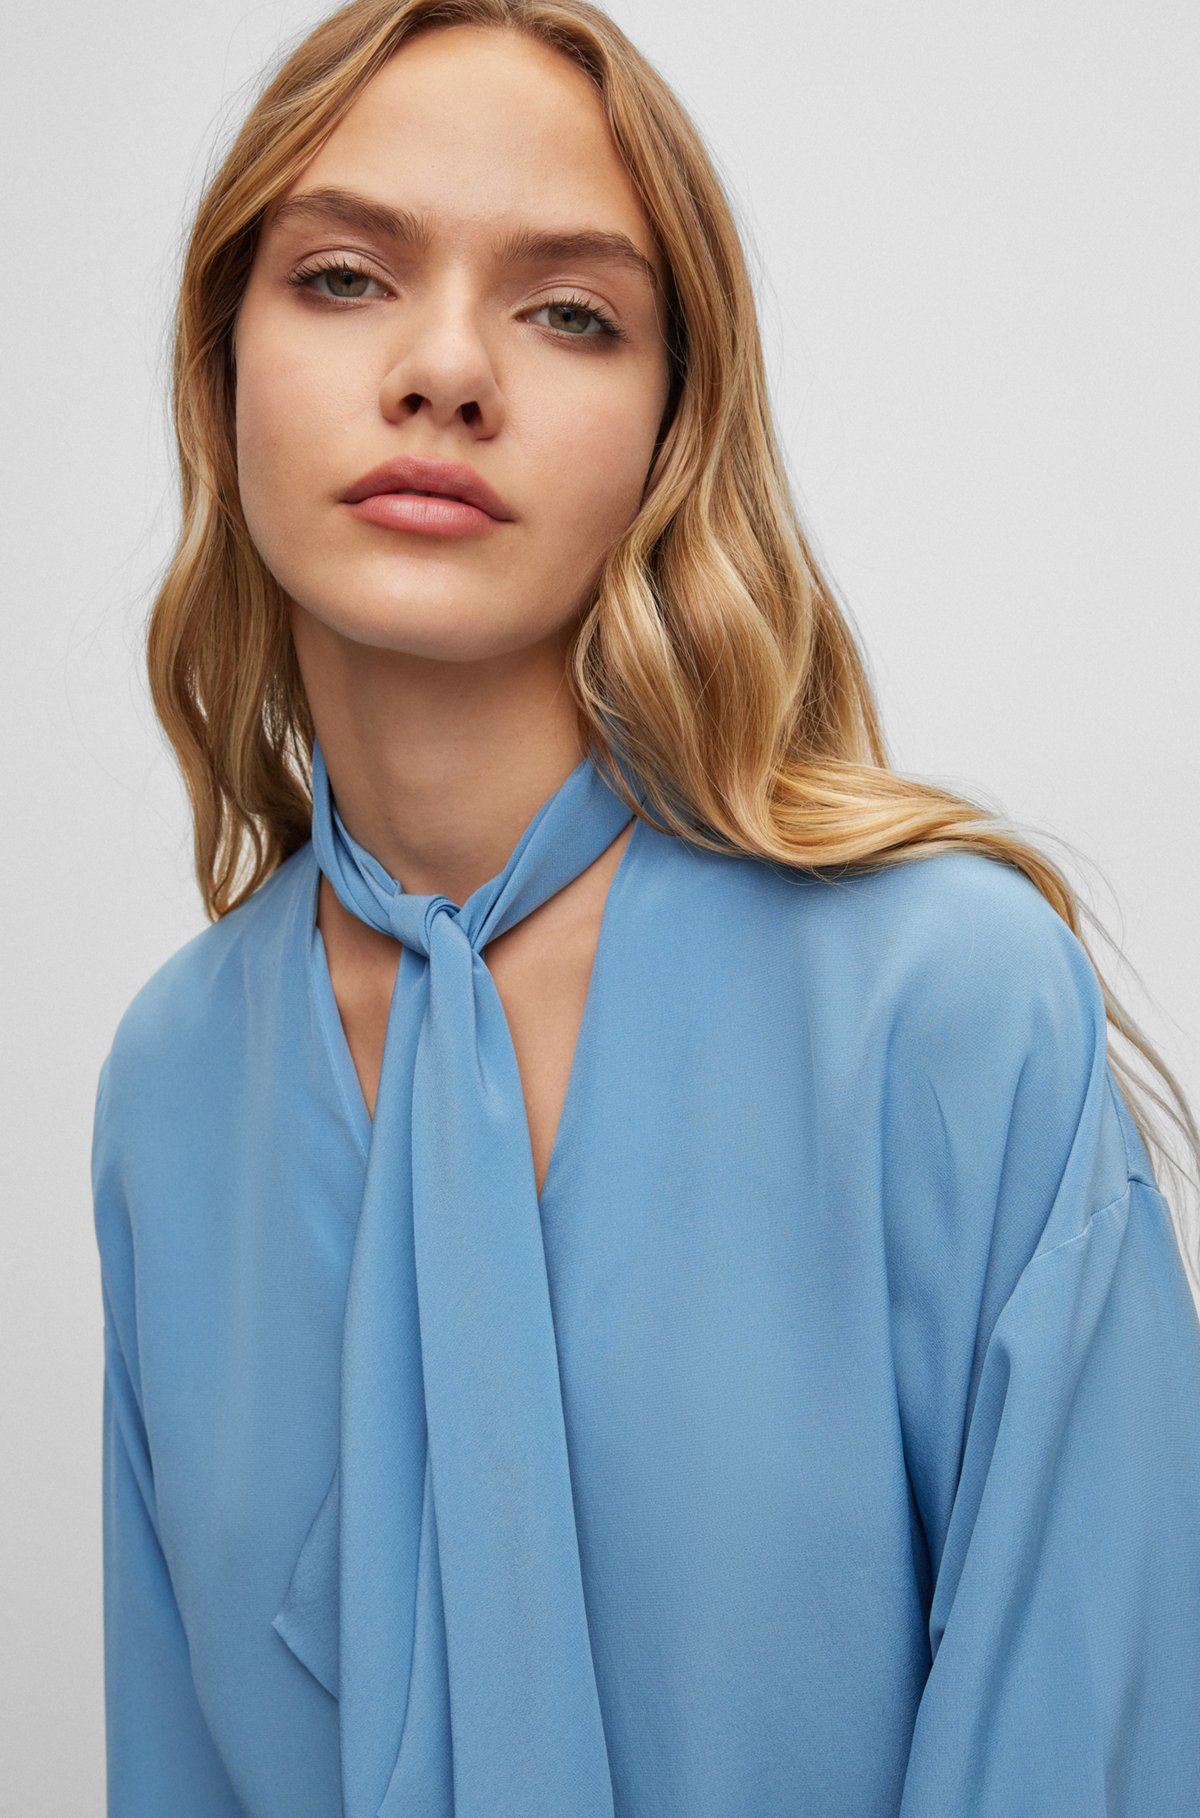 Perth Blackborough knop zoete smaak BOSS - Relaxed-fit blouse met strikhals van zijden canvas